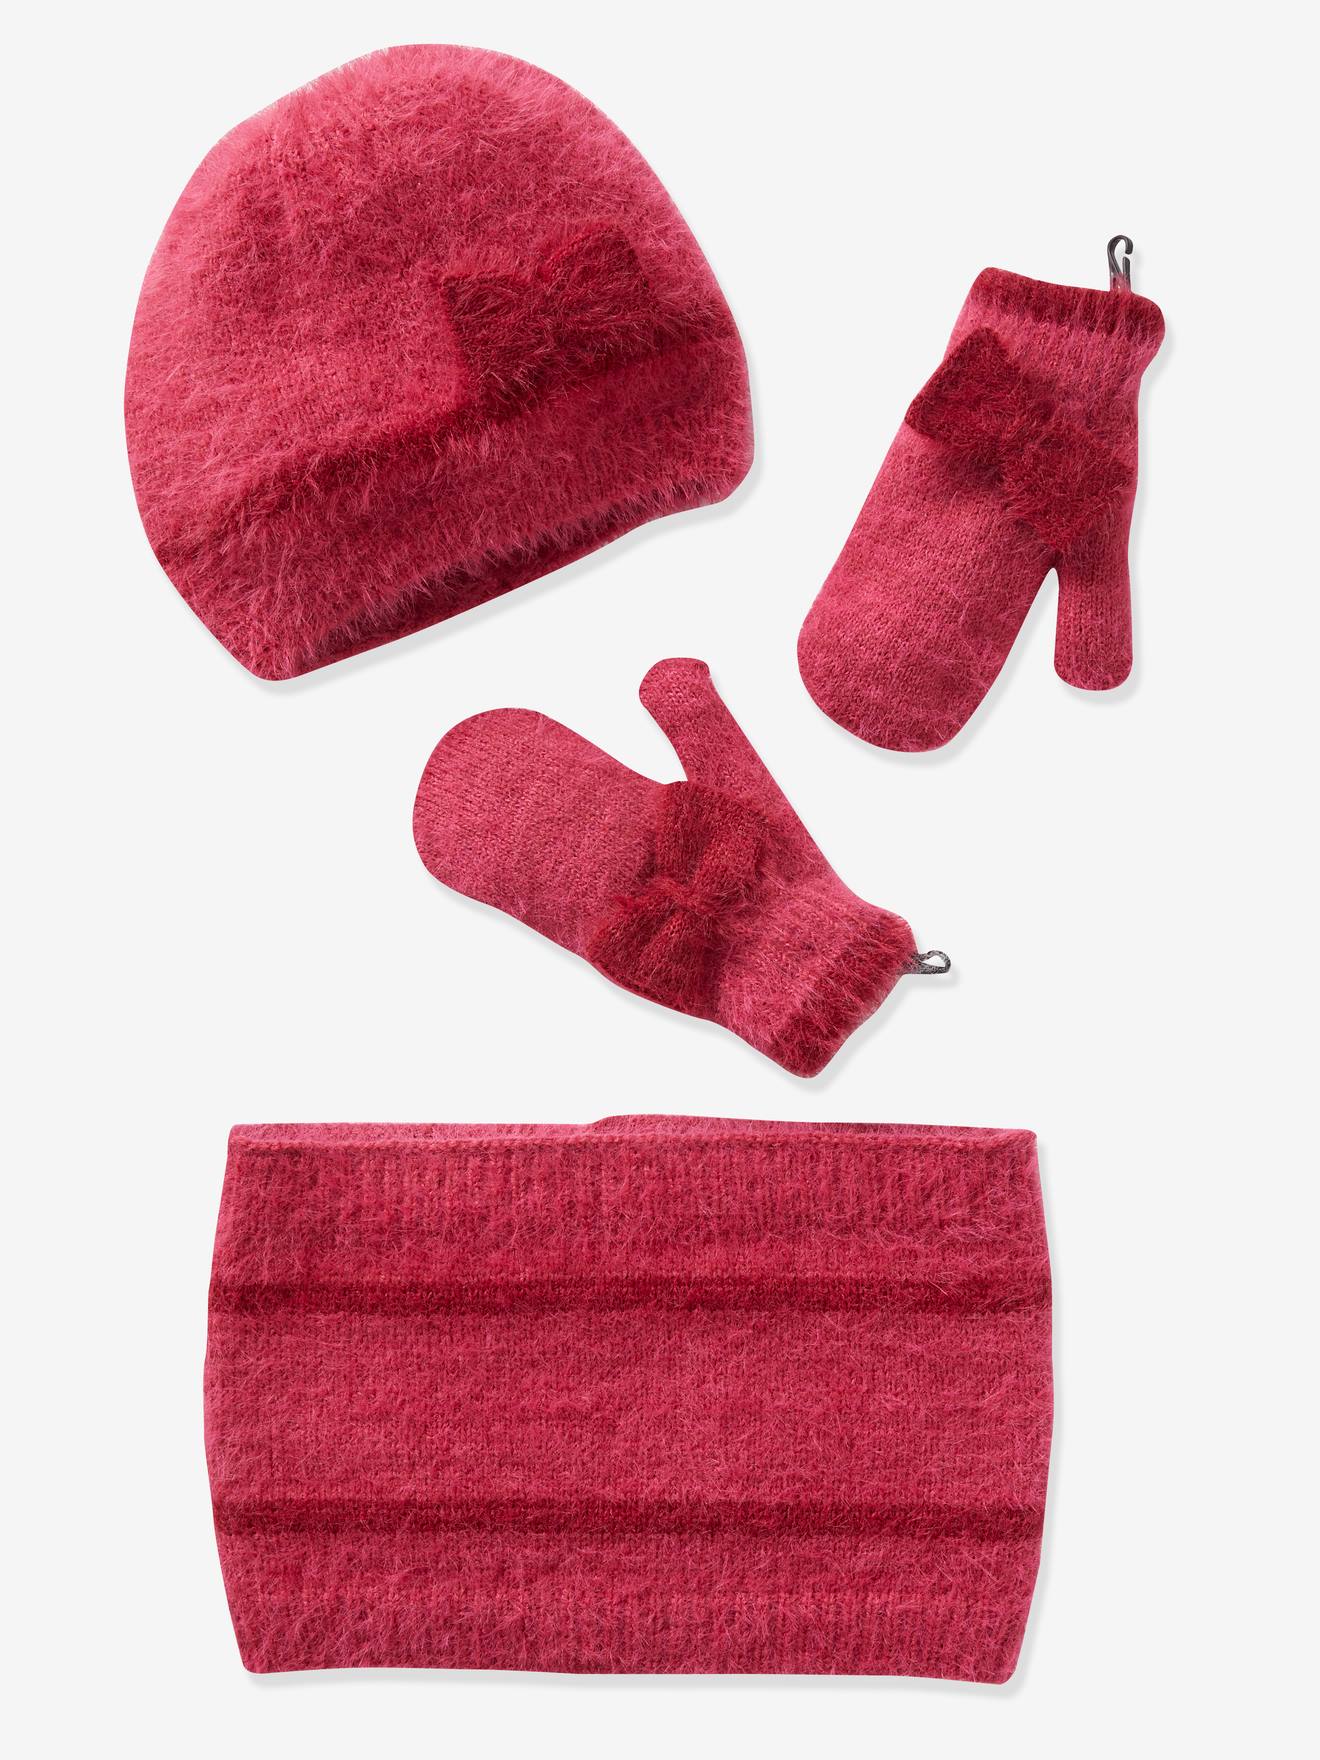 Hat scarf gloves matching set baby toddler accessories orange doll girls winter 